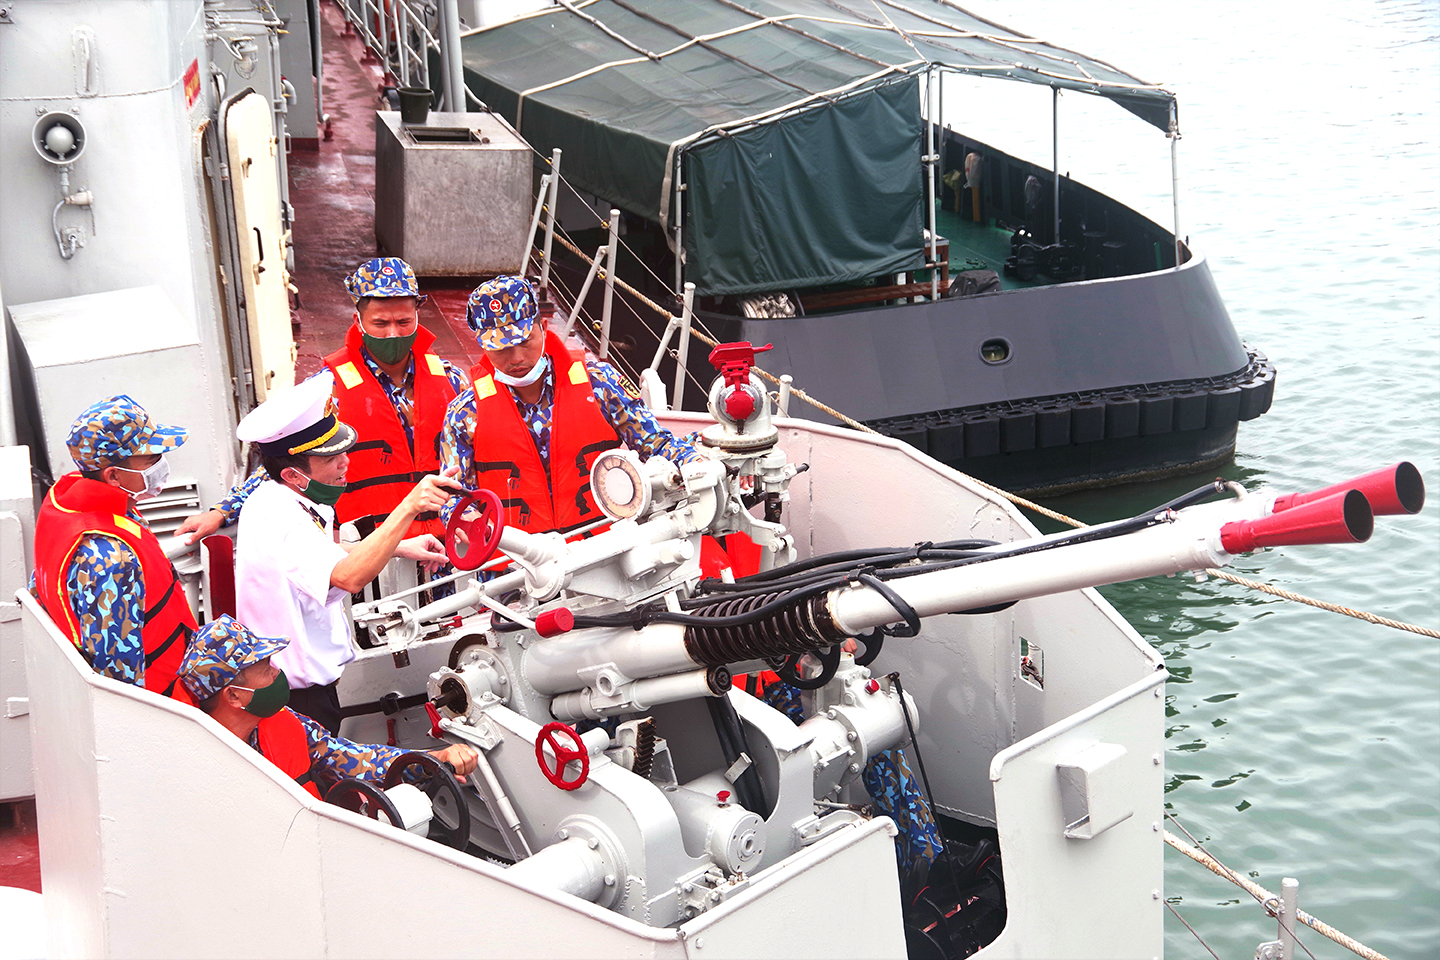  Đoàn công tác Bộ Tư lệnh Vùng 2 Hải quân kiểm tra việc thao tác vũ khí trên tàu của cán bộ, chiến sĩ Lữ đoàn 171.